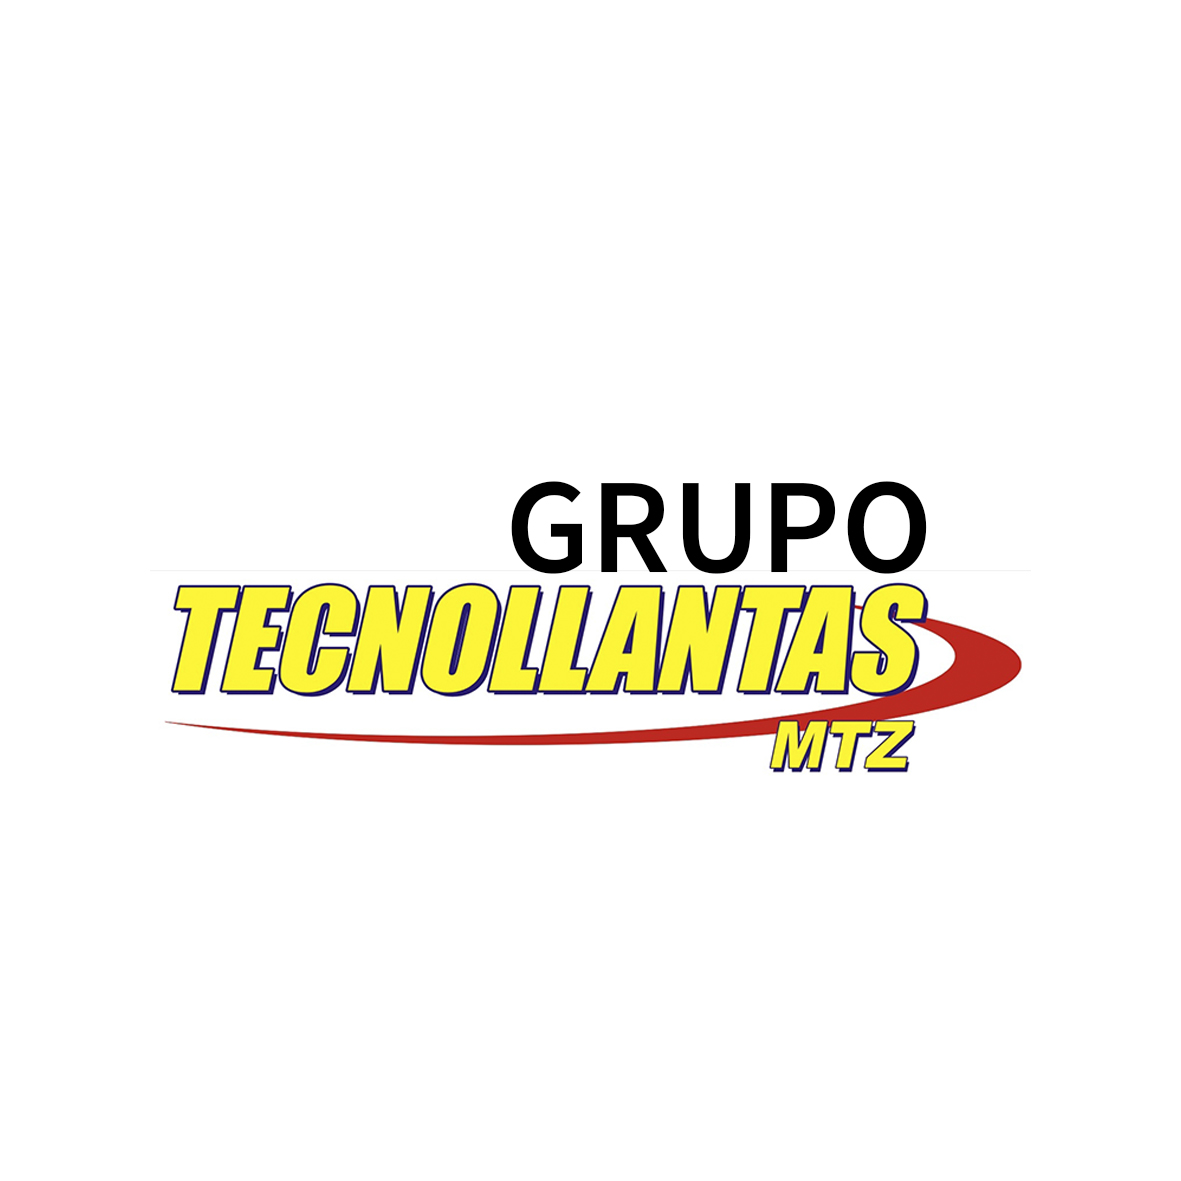 Grupotecnollantas.com